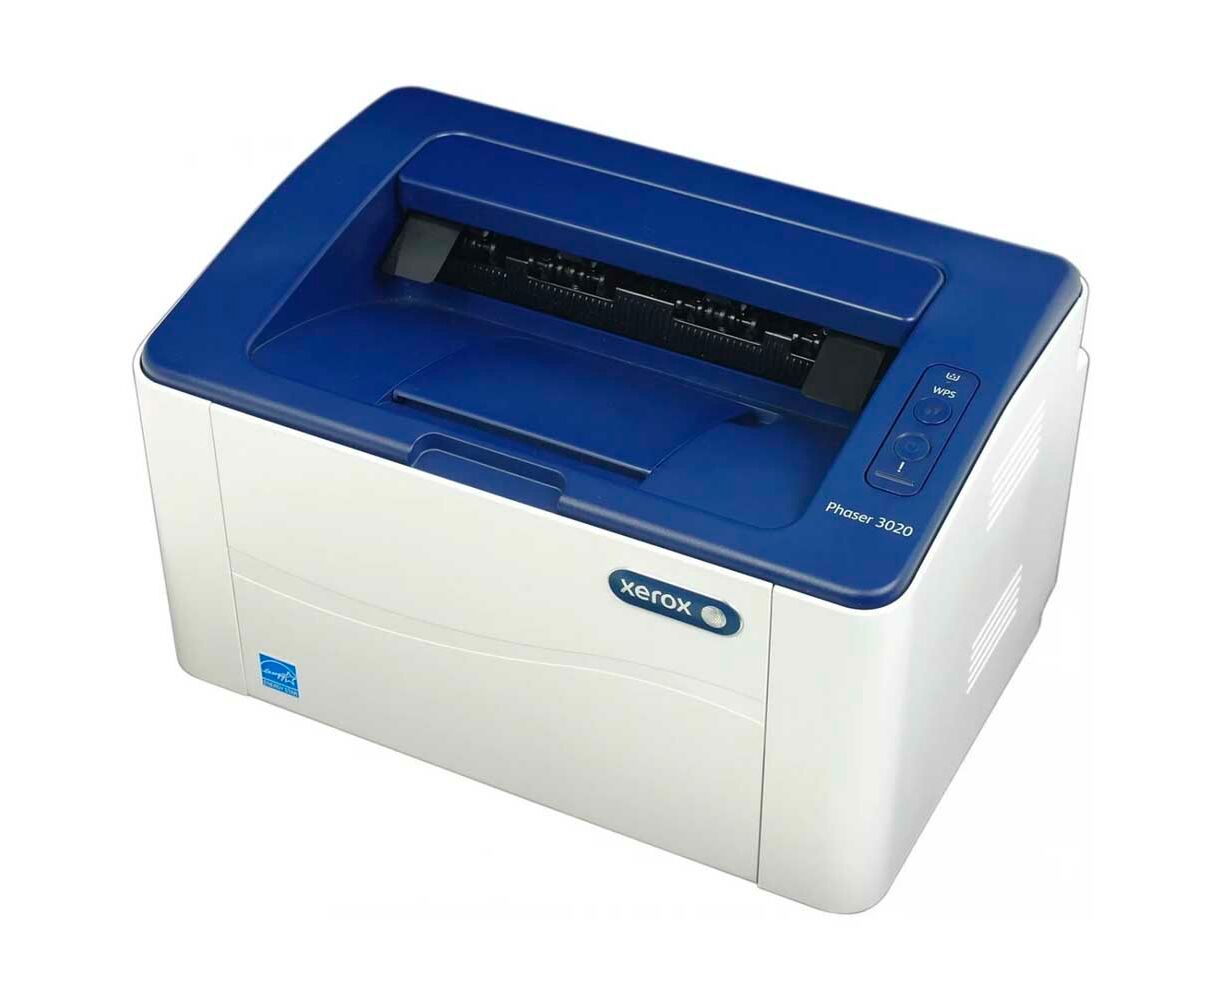 Купить принтер xerox phaser 3020. Xerox Phaser 3020. Xerox Phaser 3020bi. Принтер Xerox Phaser 3020. Принтер Xerox Phaser 3020 двусторонняя печать.